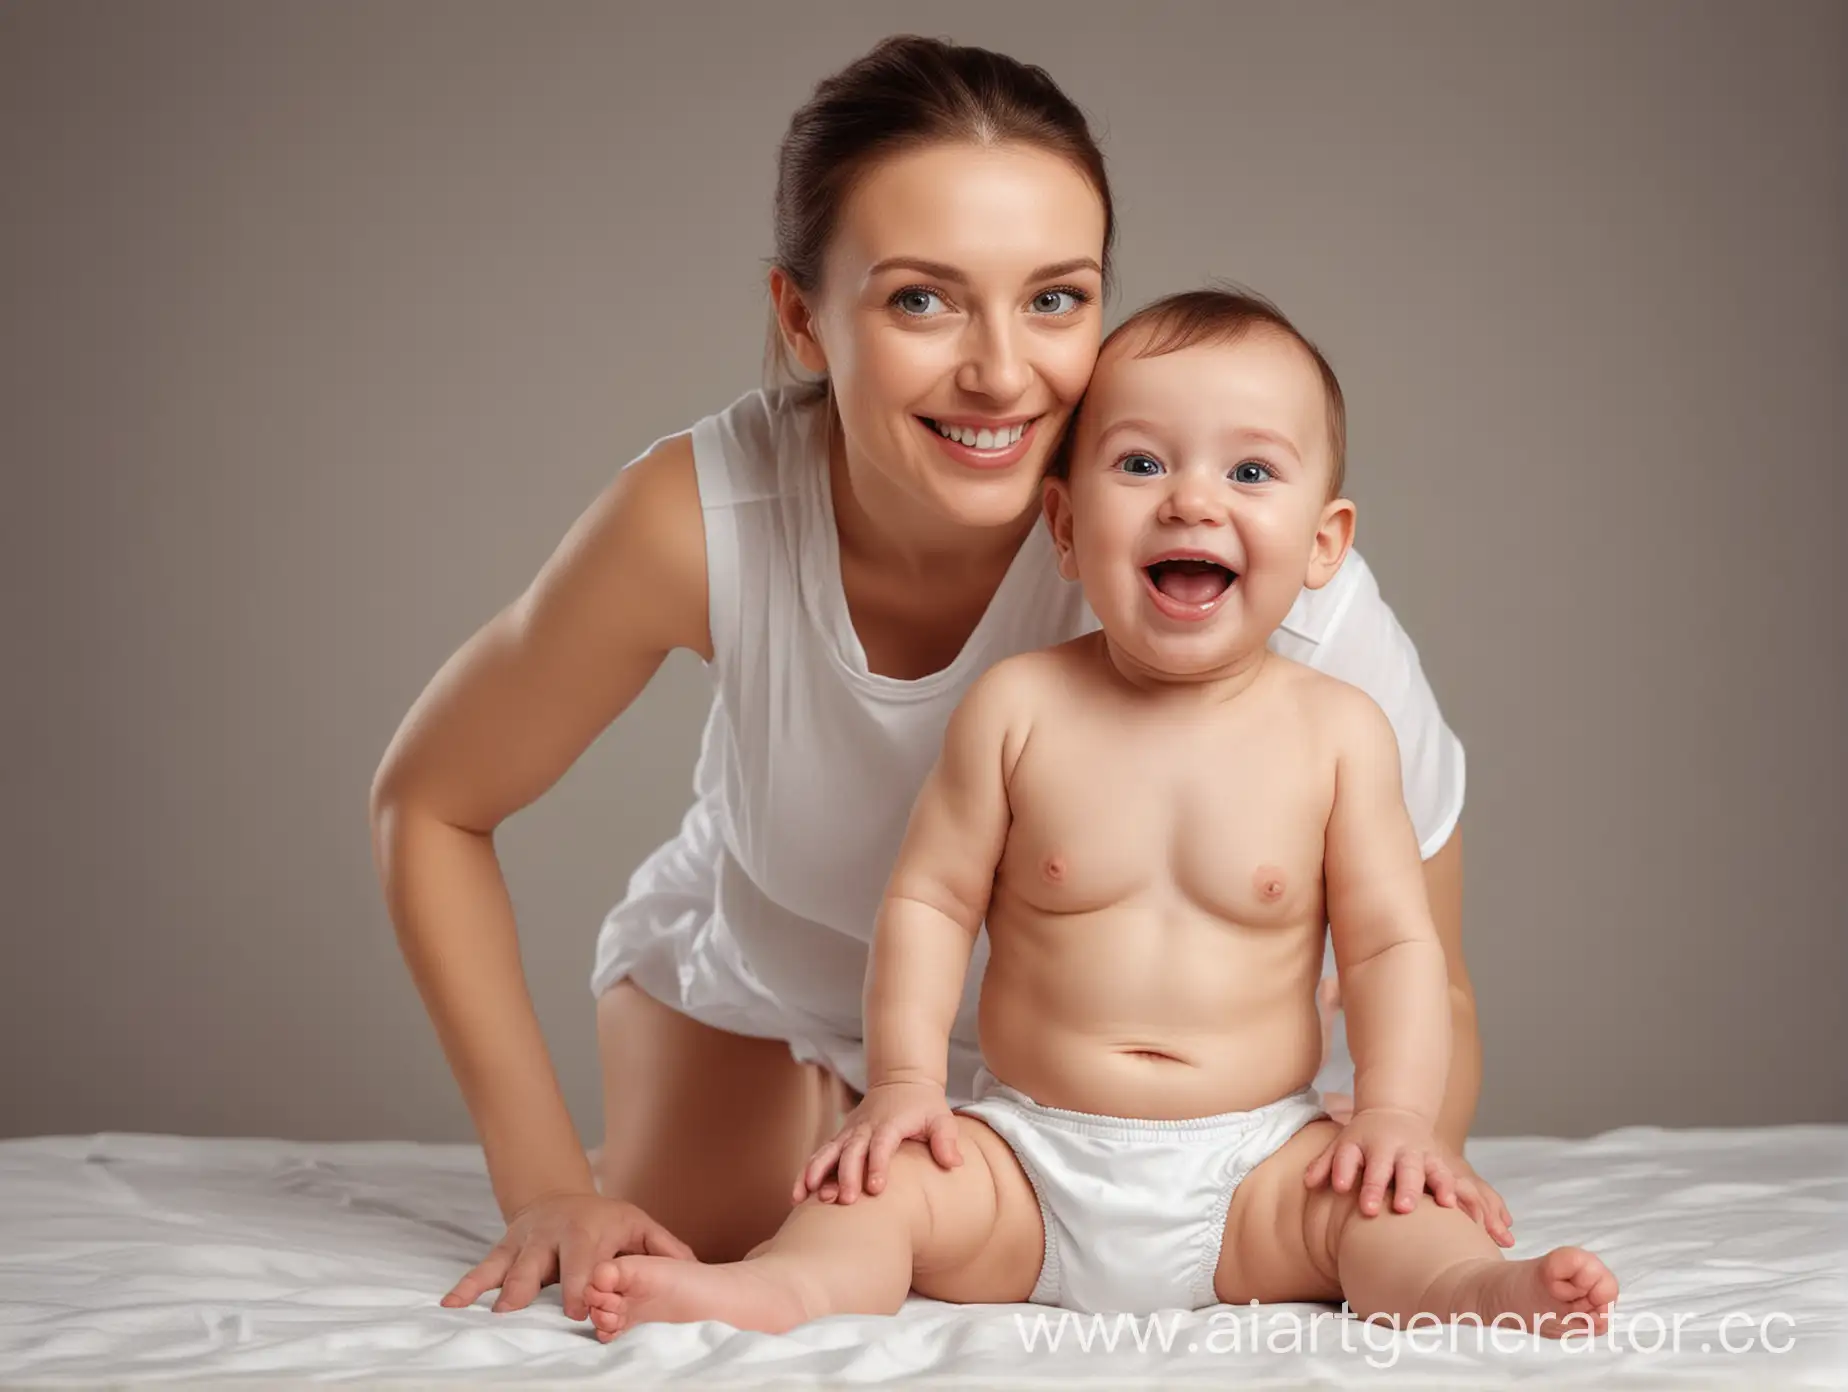 младенец в подгузниках с мамой веселый с необычной улыбкой реалистичная фото для баннера на сайт компании
